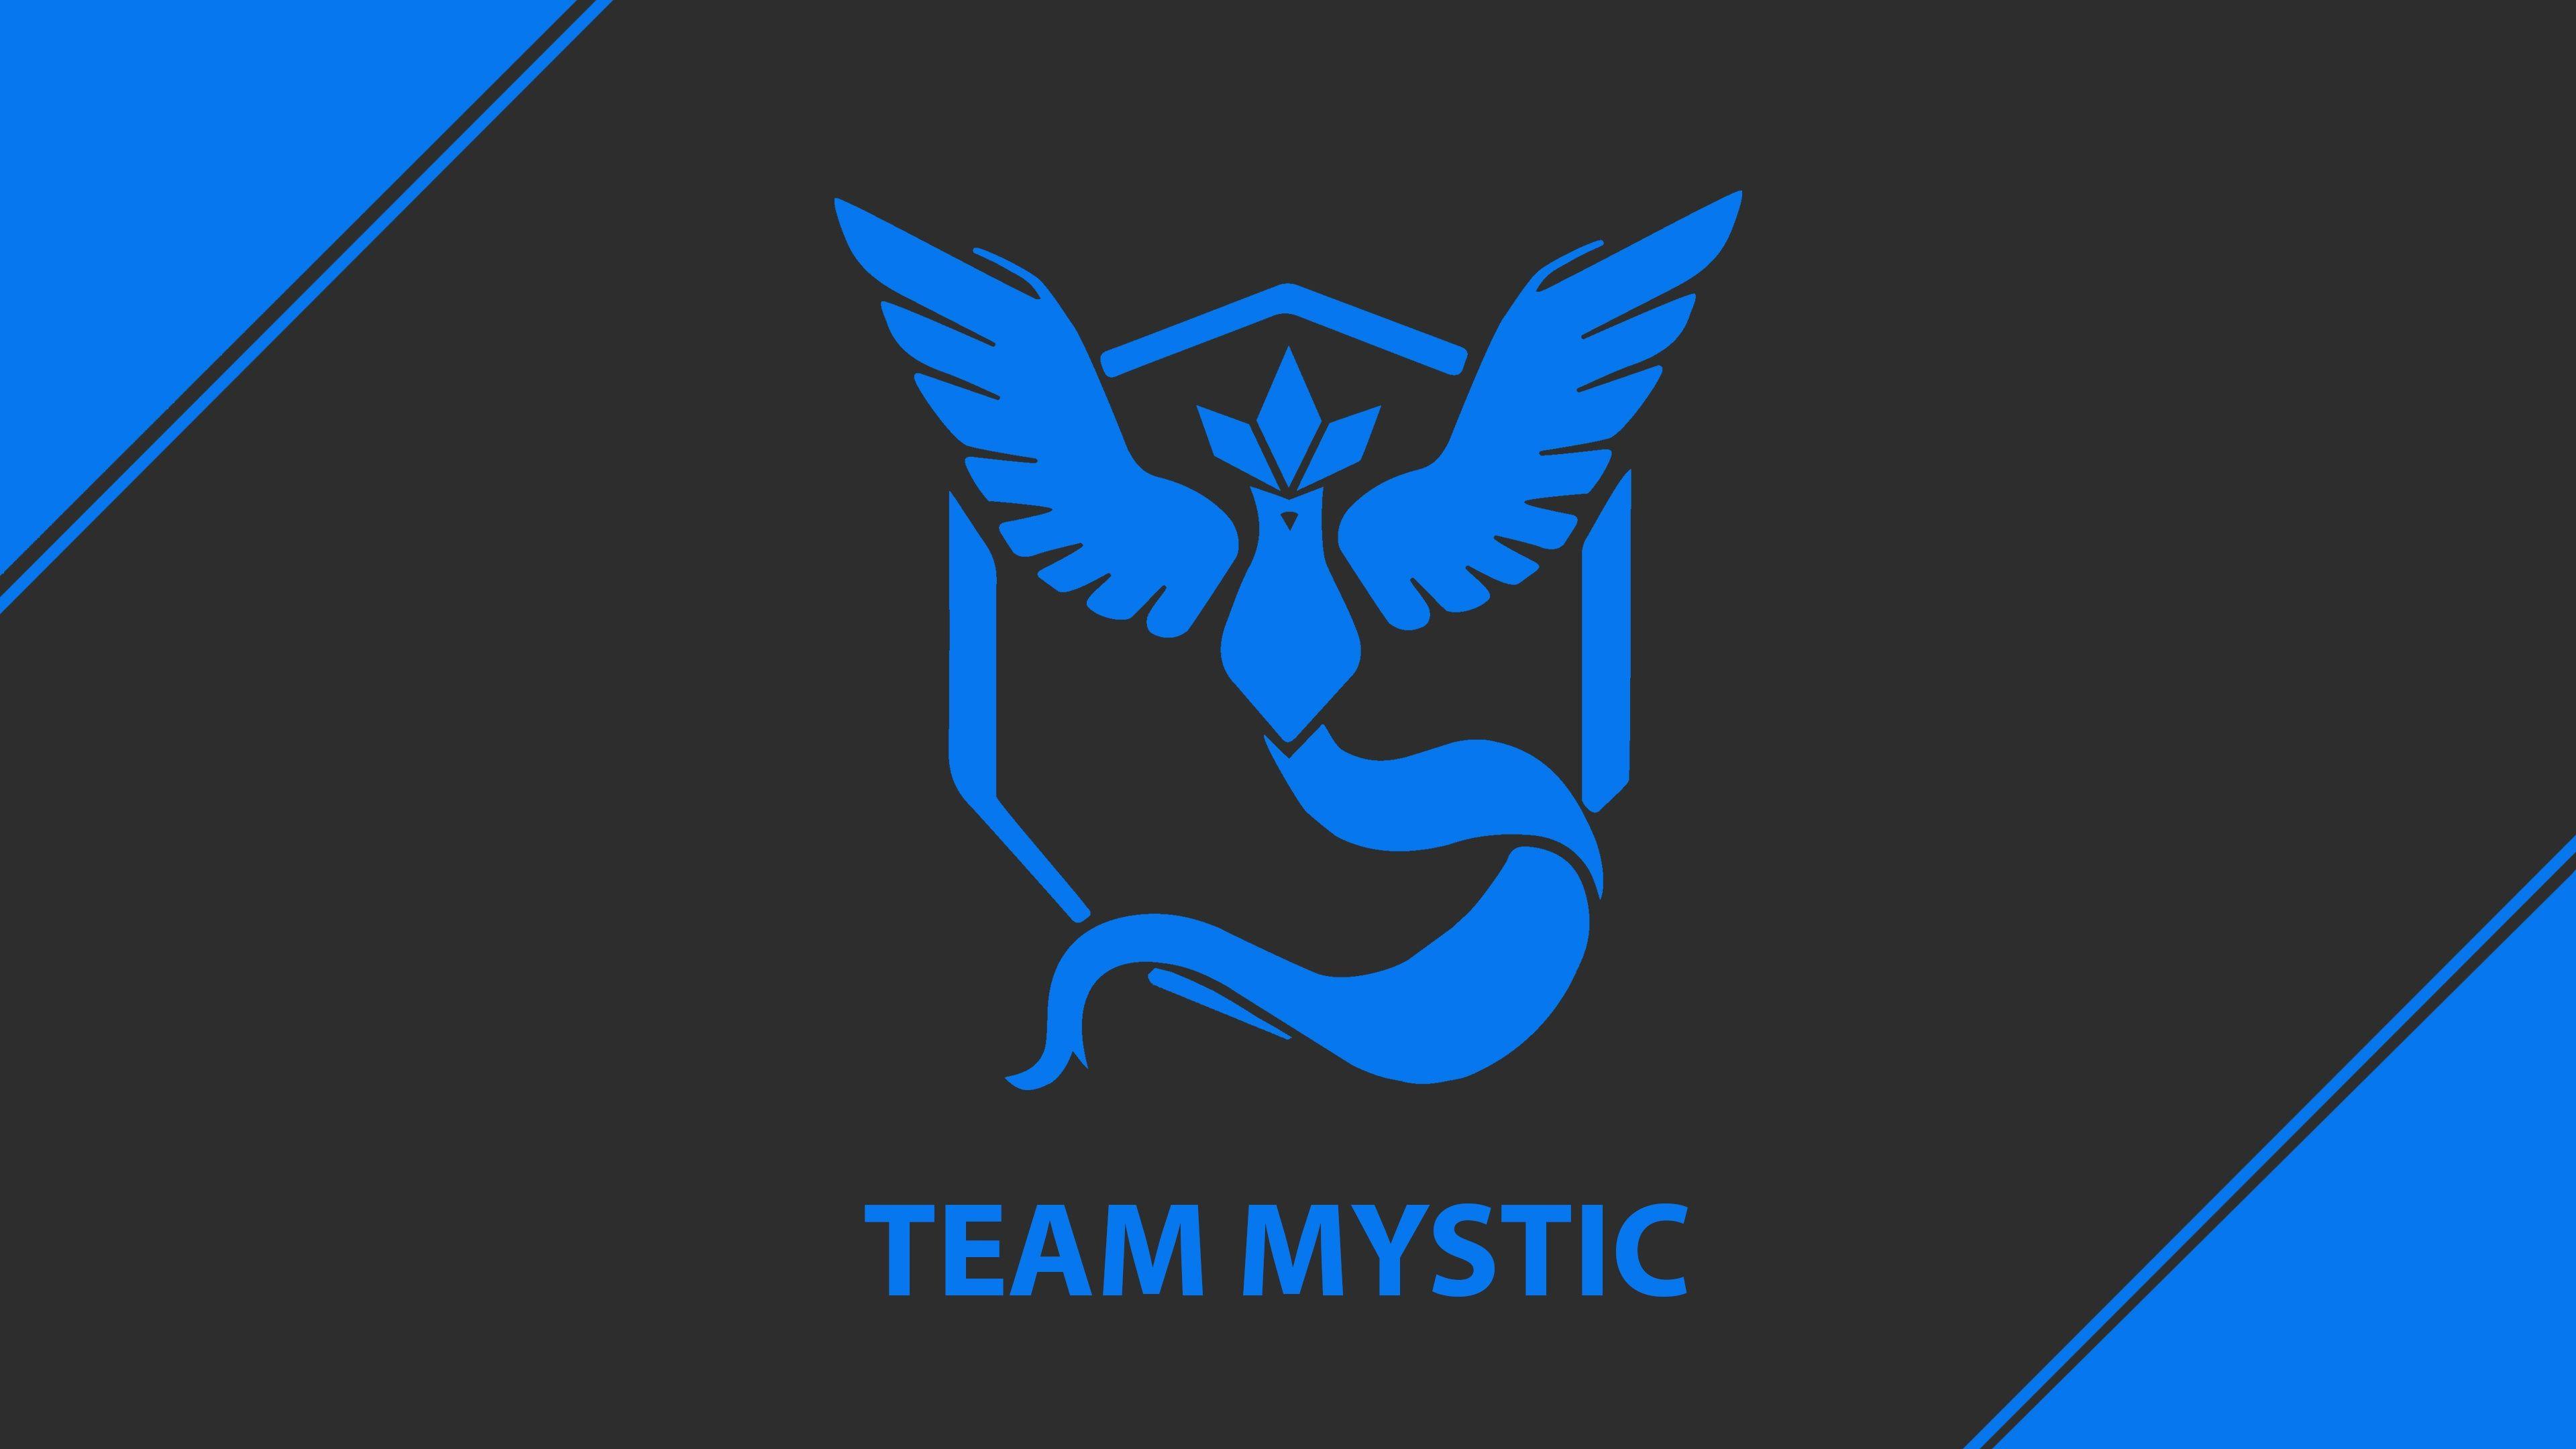 Pokemon Go Team Mystic Team Blue 4K Wallpaper in jpg format